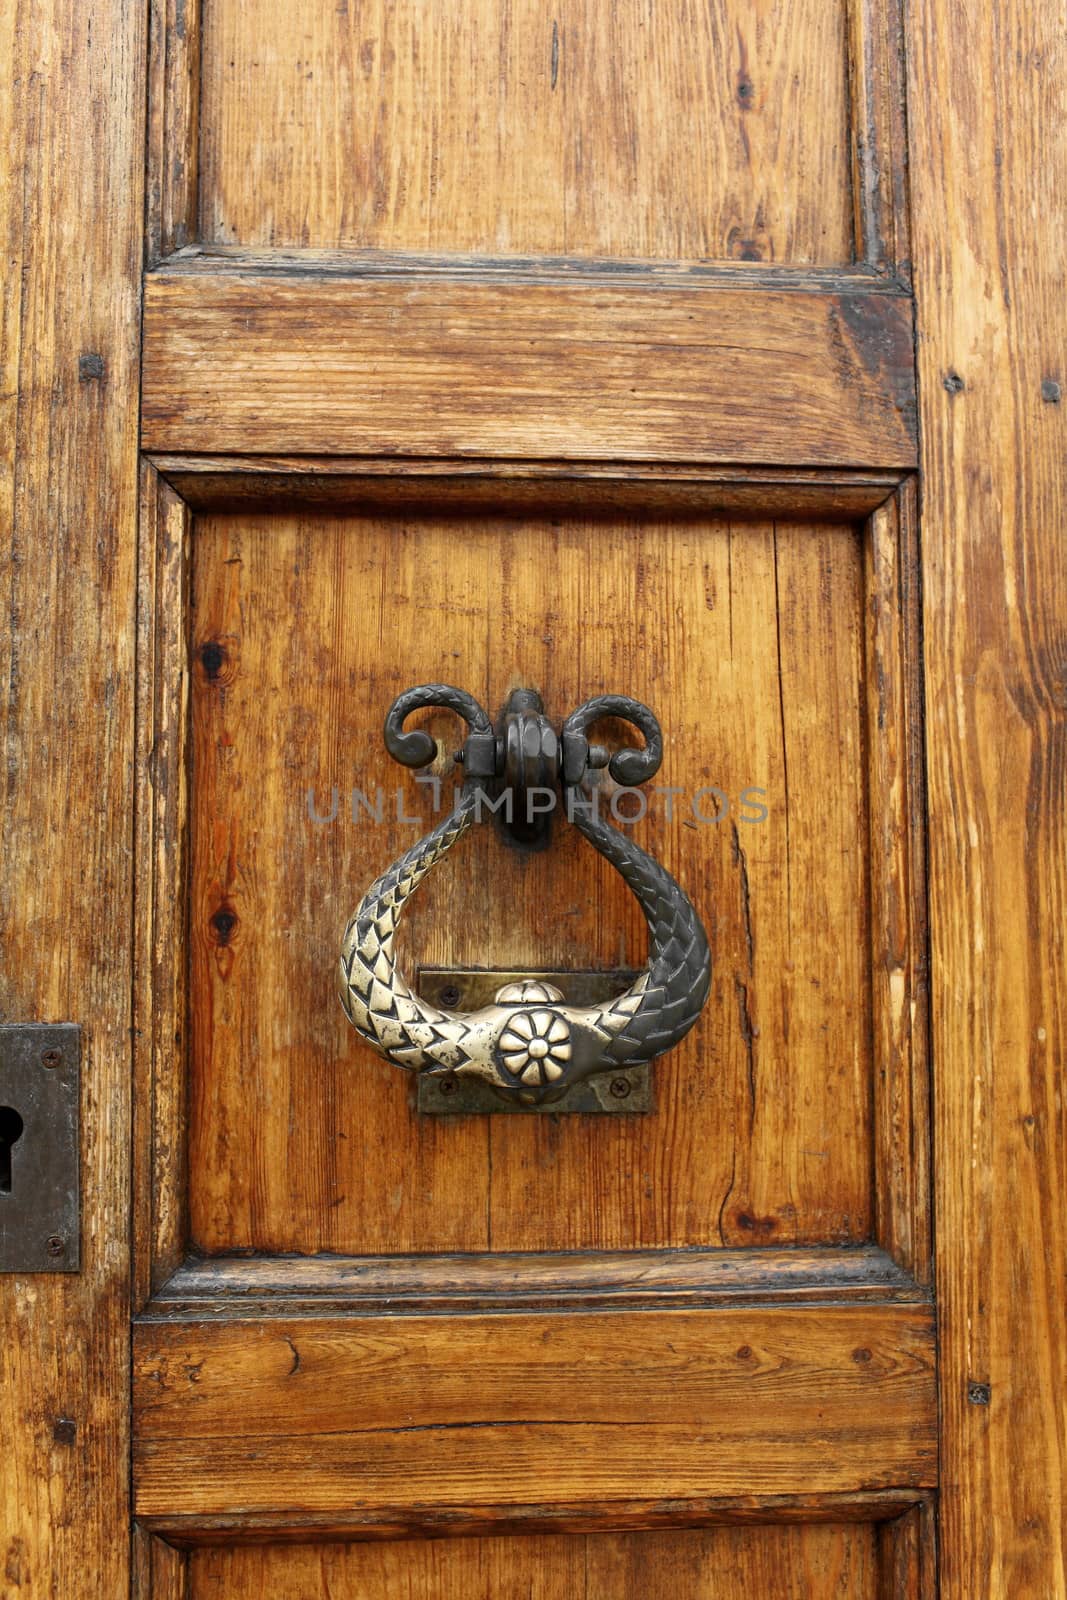 The door knocker  and handle on an medieval door